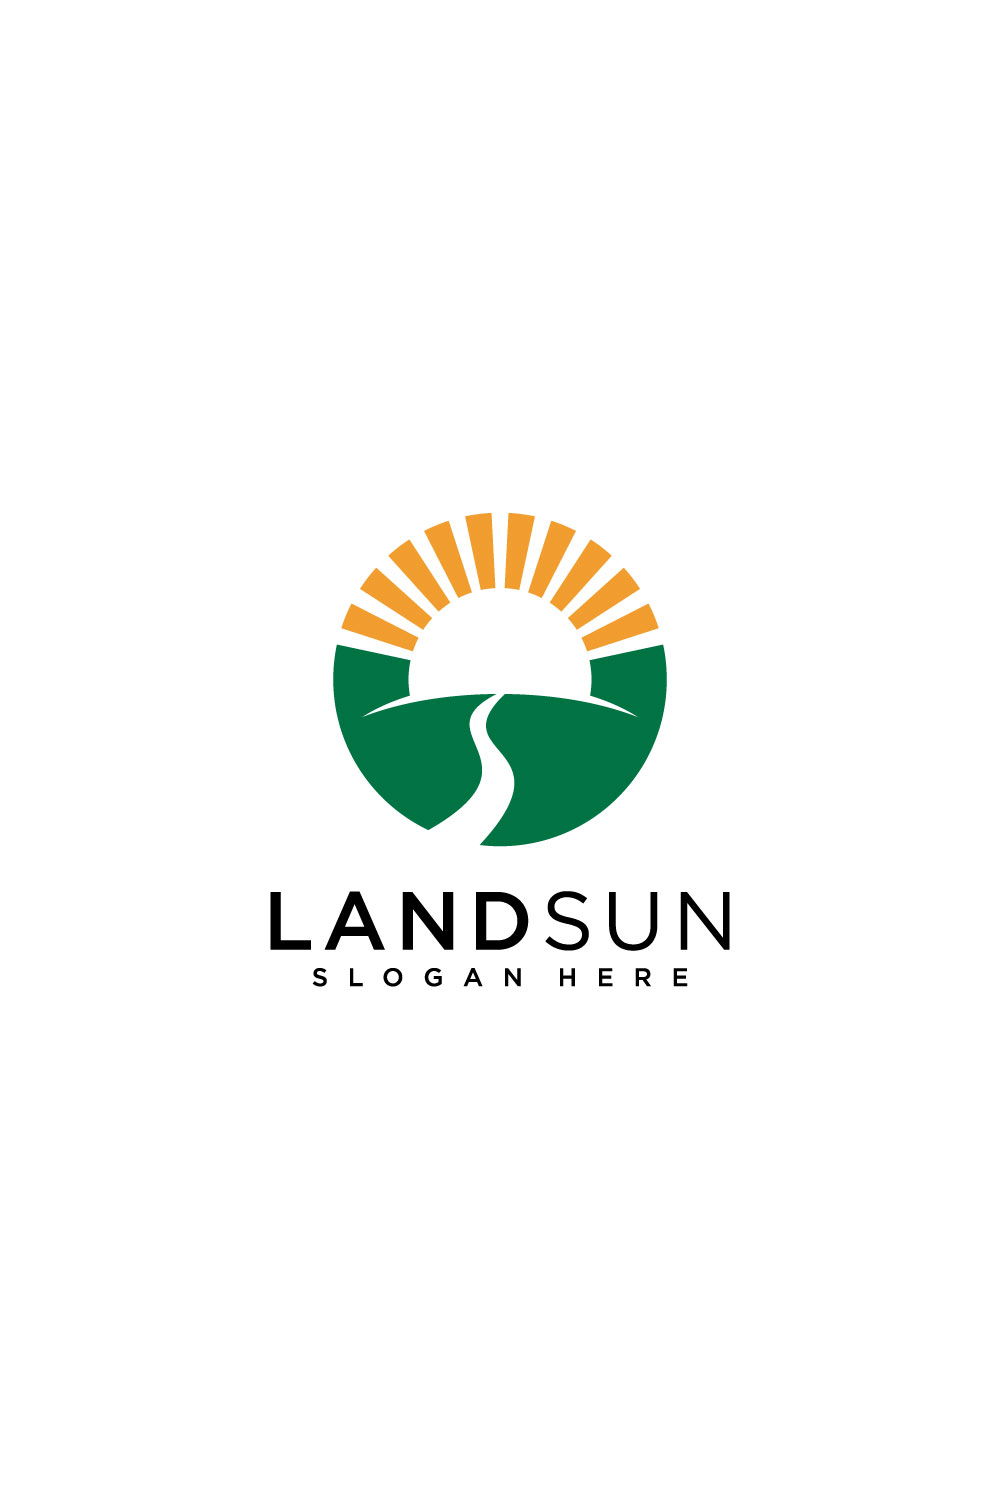 landscape sun logo vector design pinterest preview image.